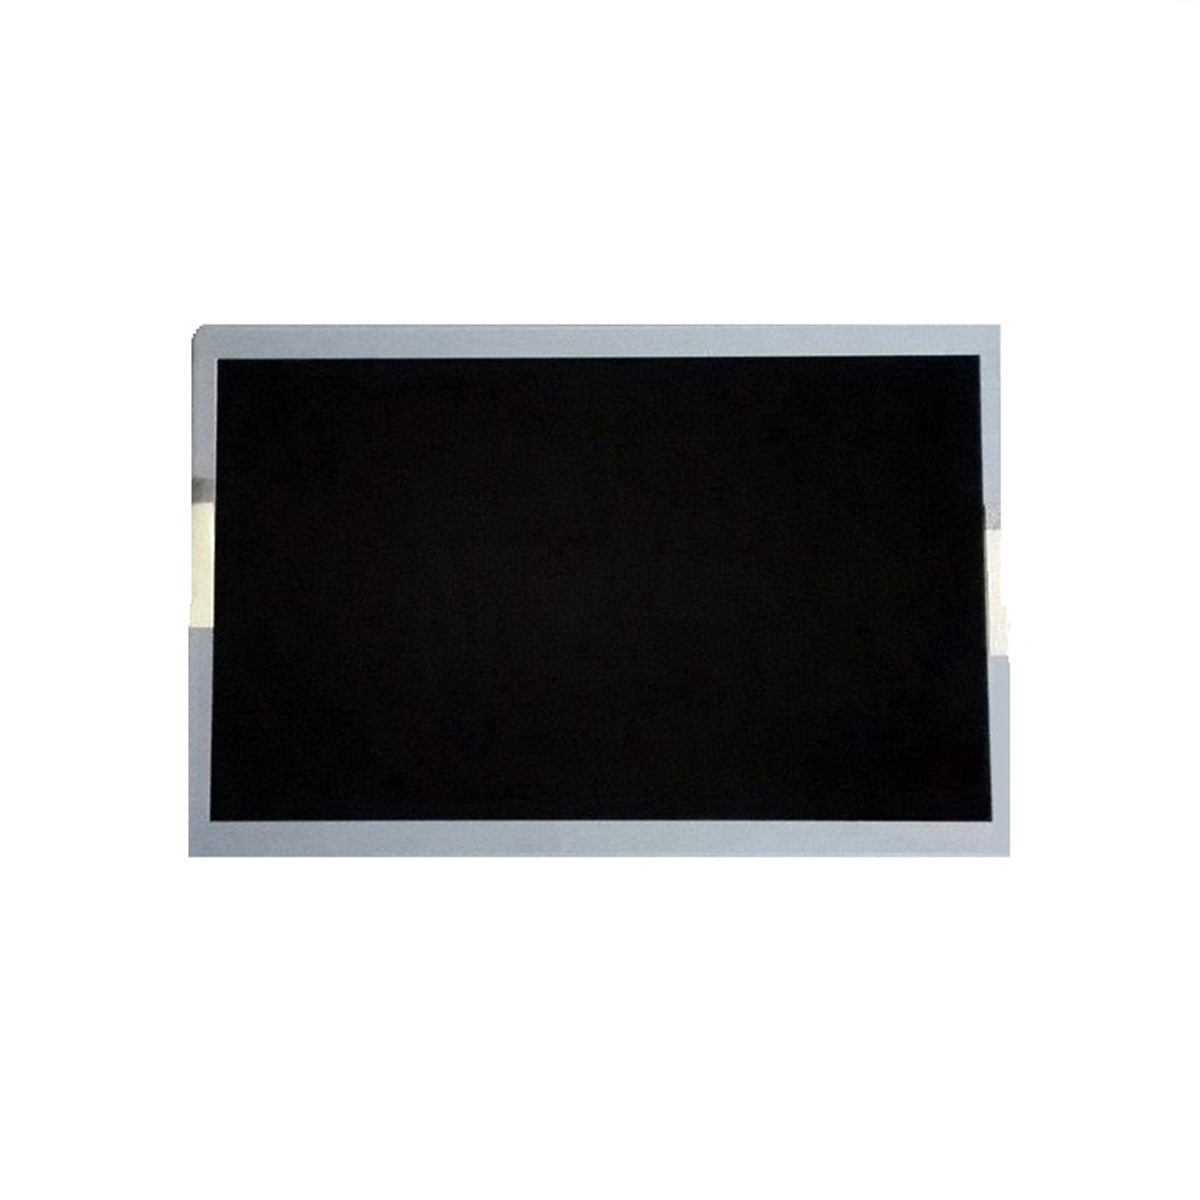 SHARP LQ070Y3LW01 LCD